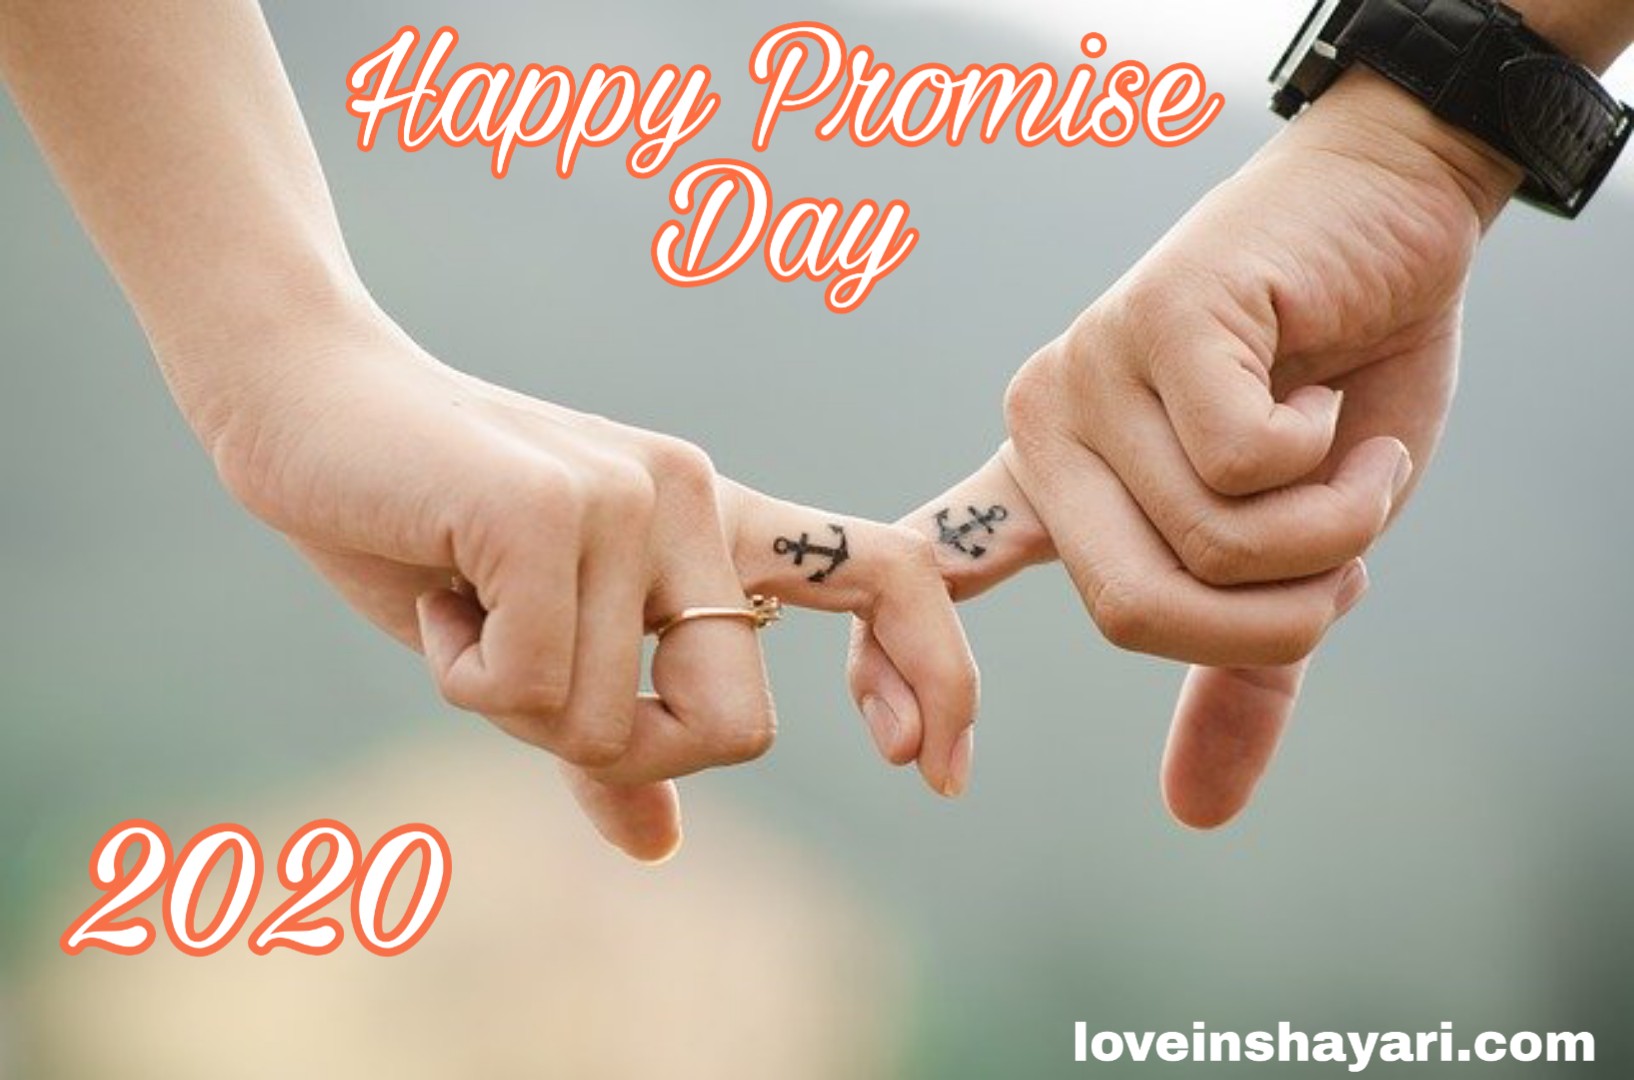 Happy Promise day